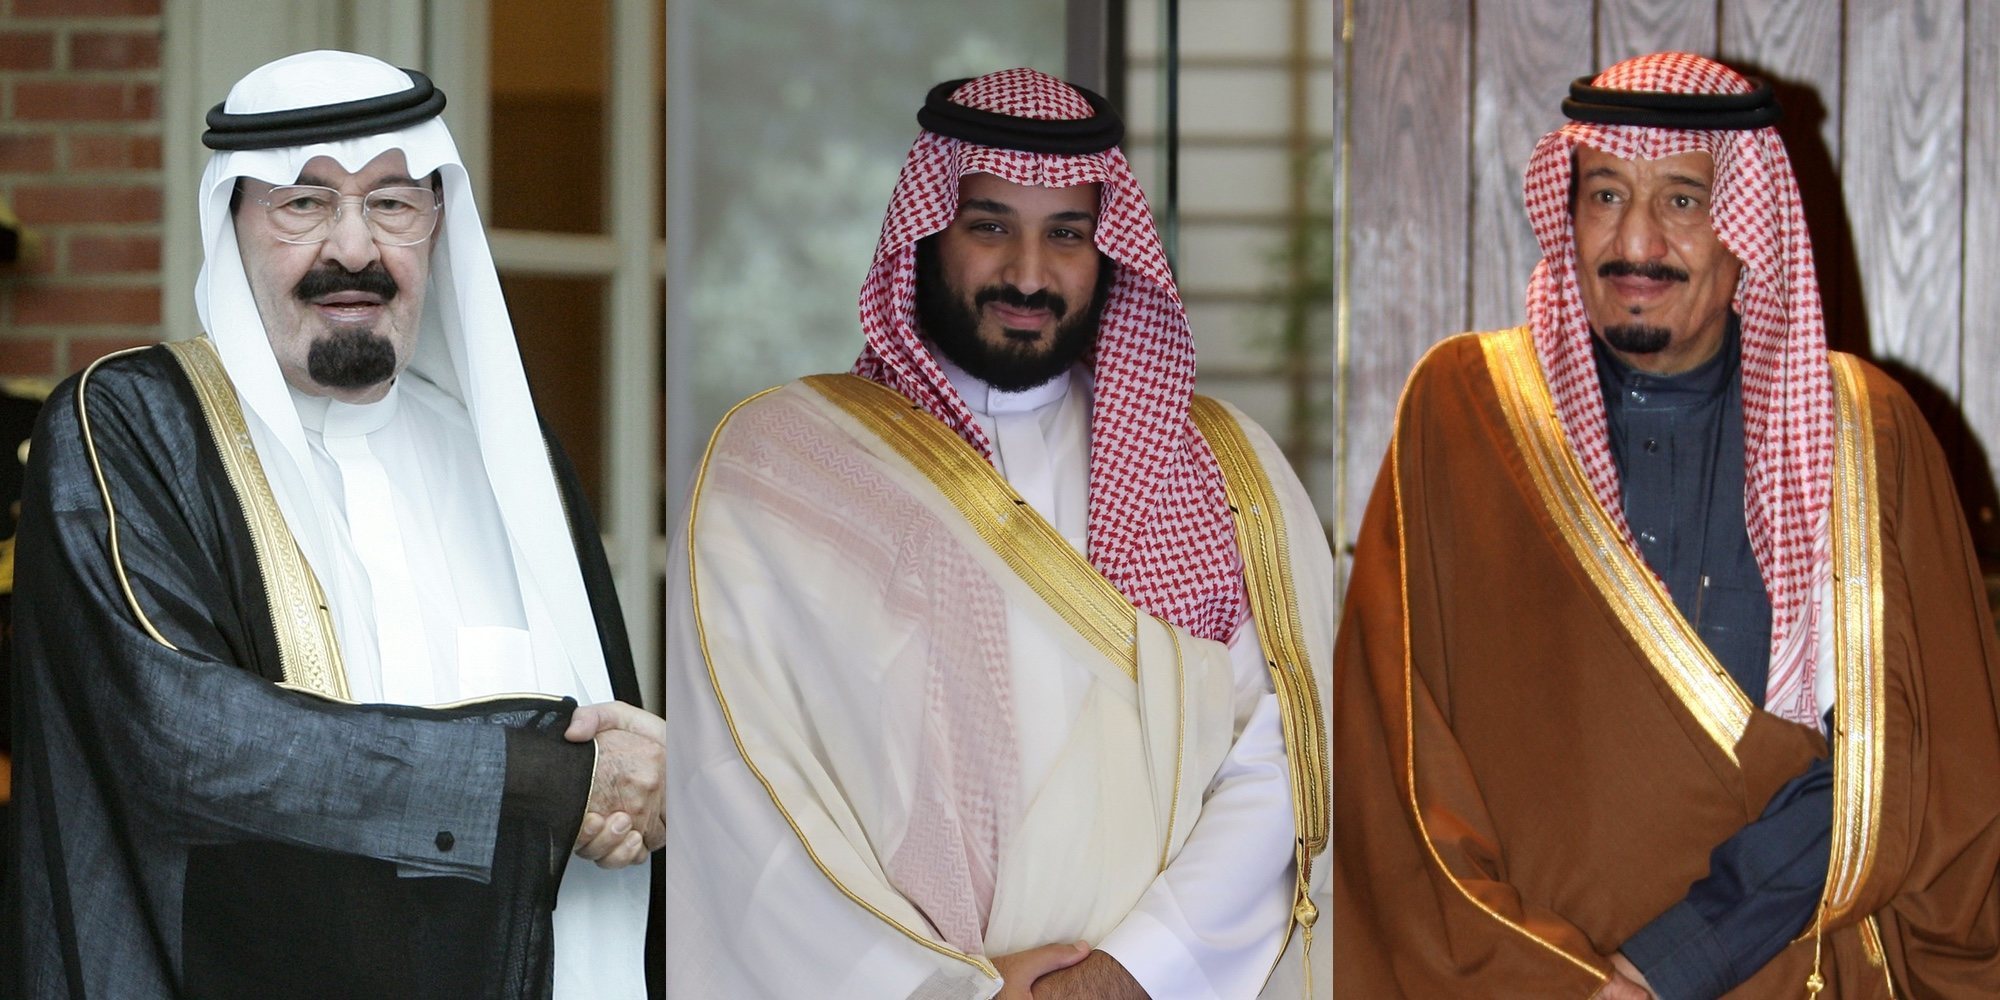 Familia Real Saudí: conoce a los miembros de la inmensa Casa de Saud